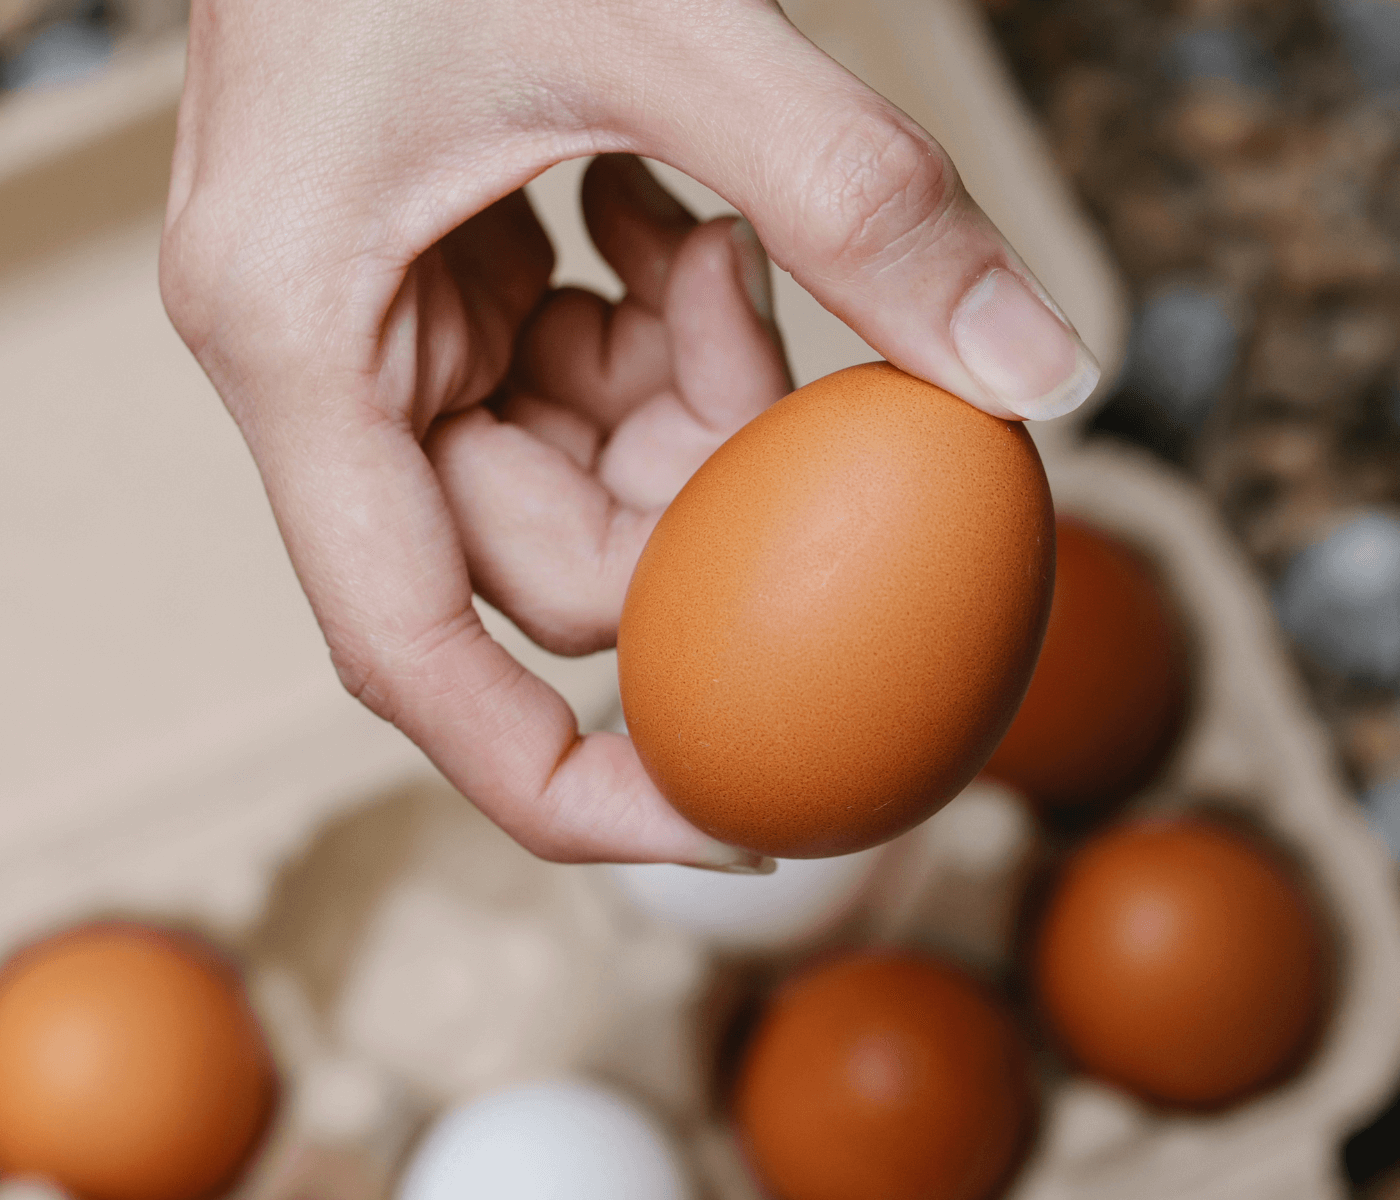 Novedades regulatorias sobre el huevo en España